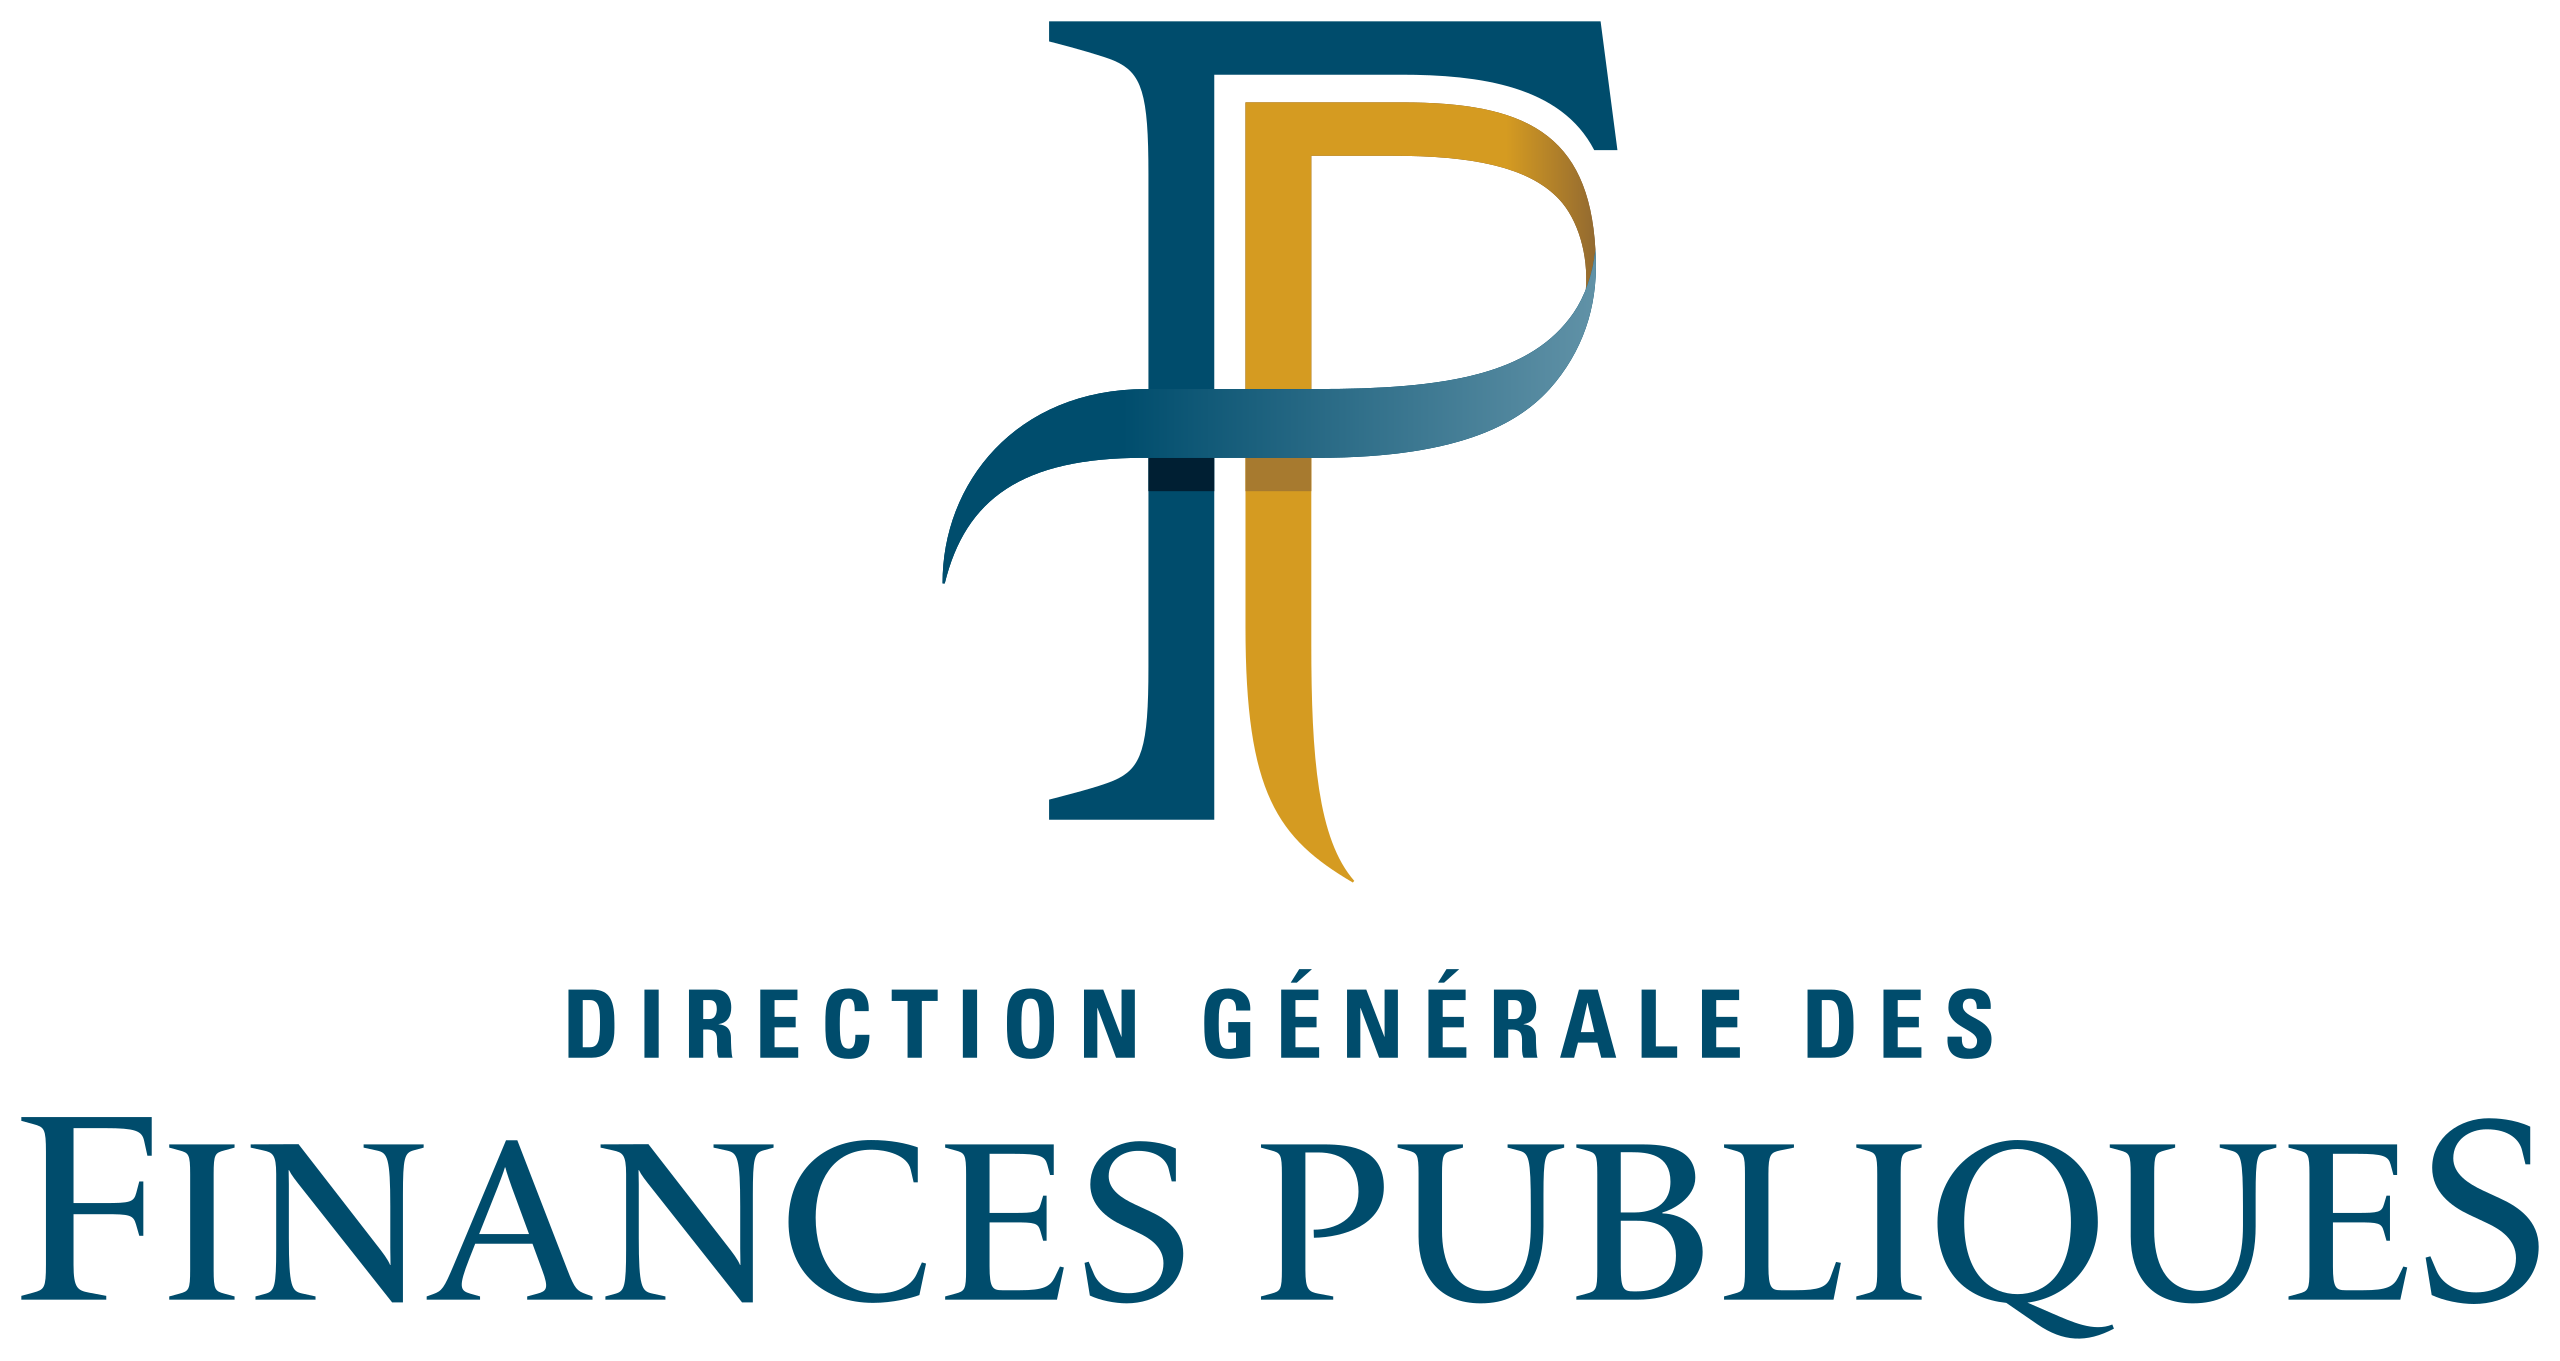 Direction générale des finances publiques